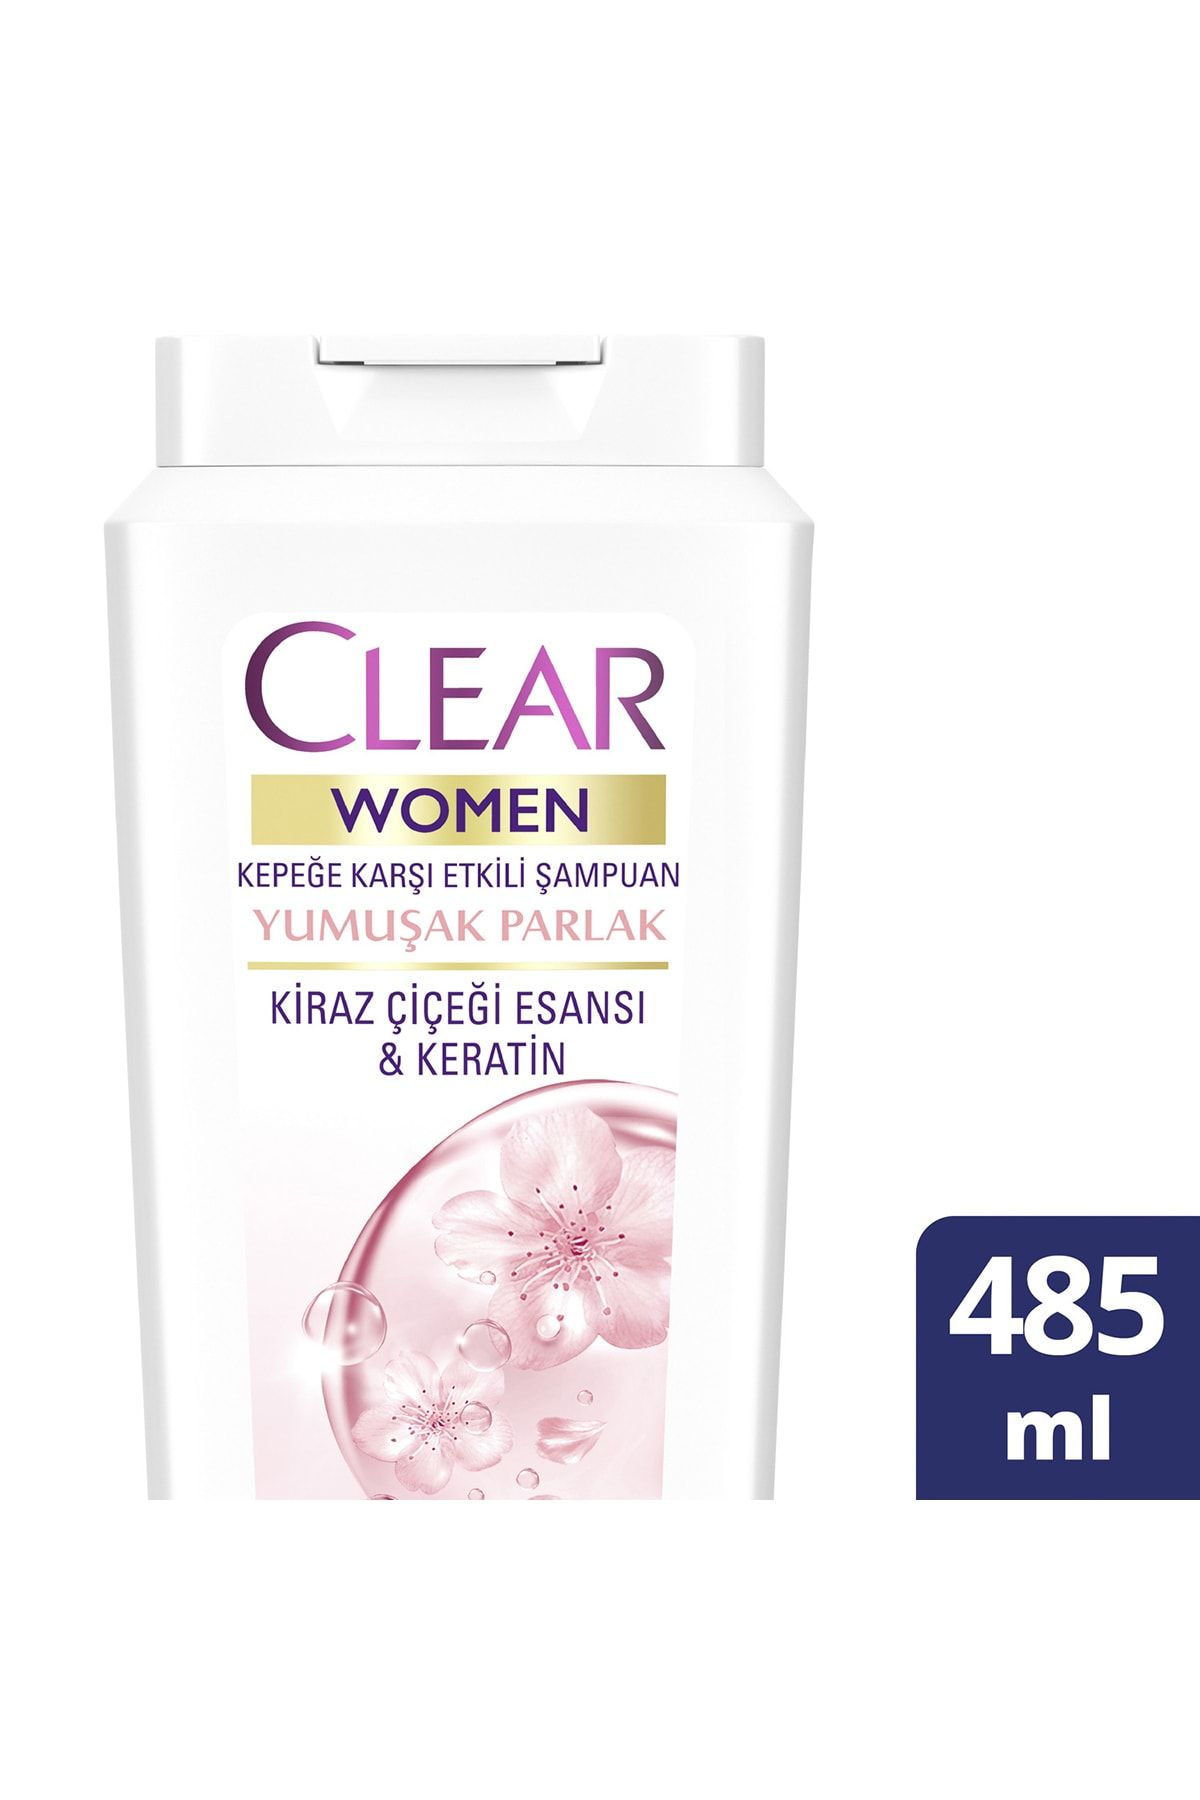 Clear Women Kepeğe Karşı Etkili Şampuan Yumuşak Parlak Kiraz Çiçeği Esansı & Keratin 485 ml